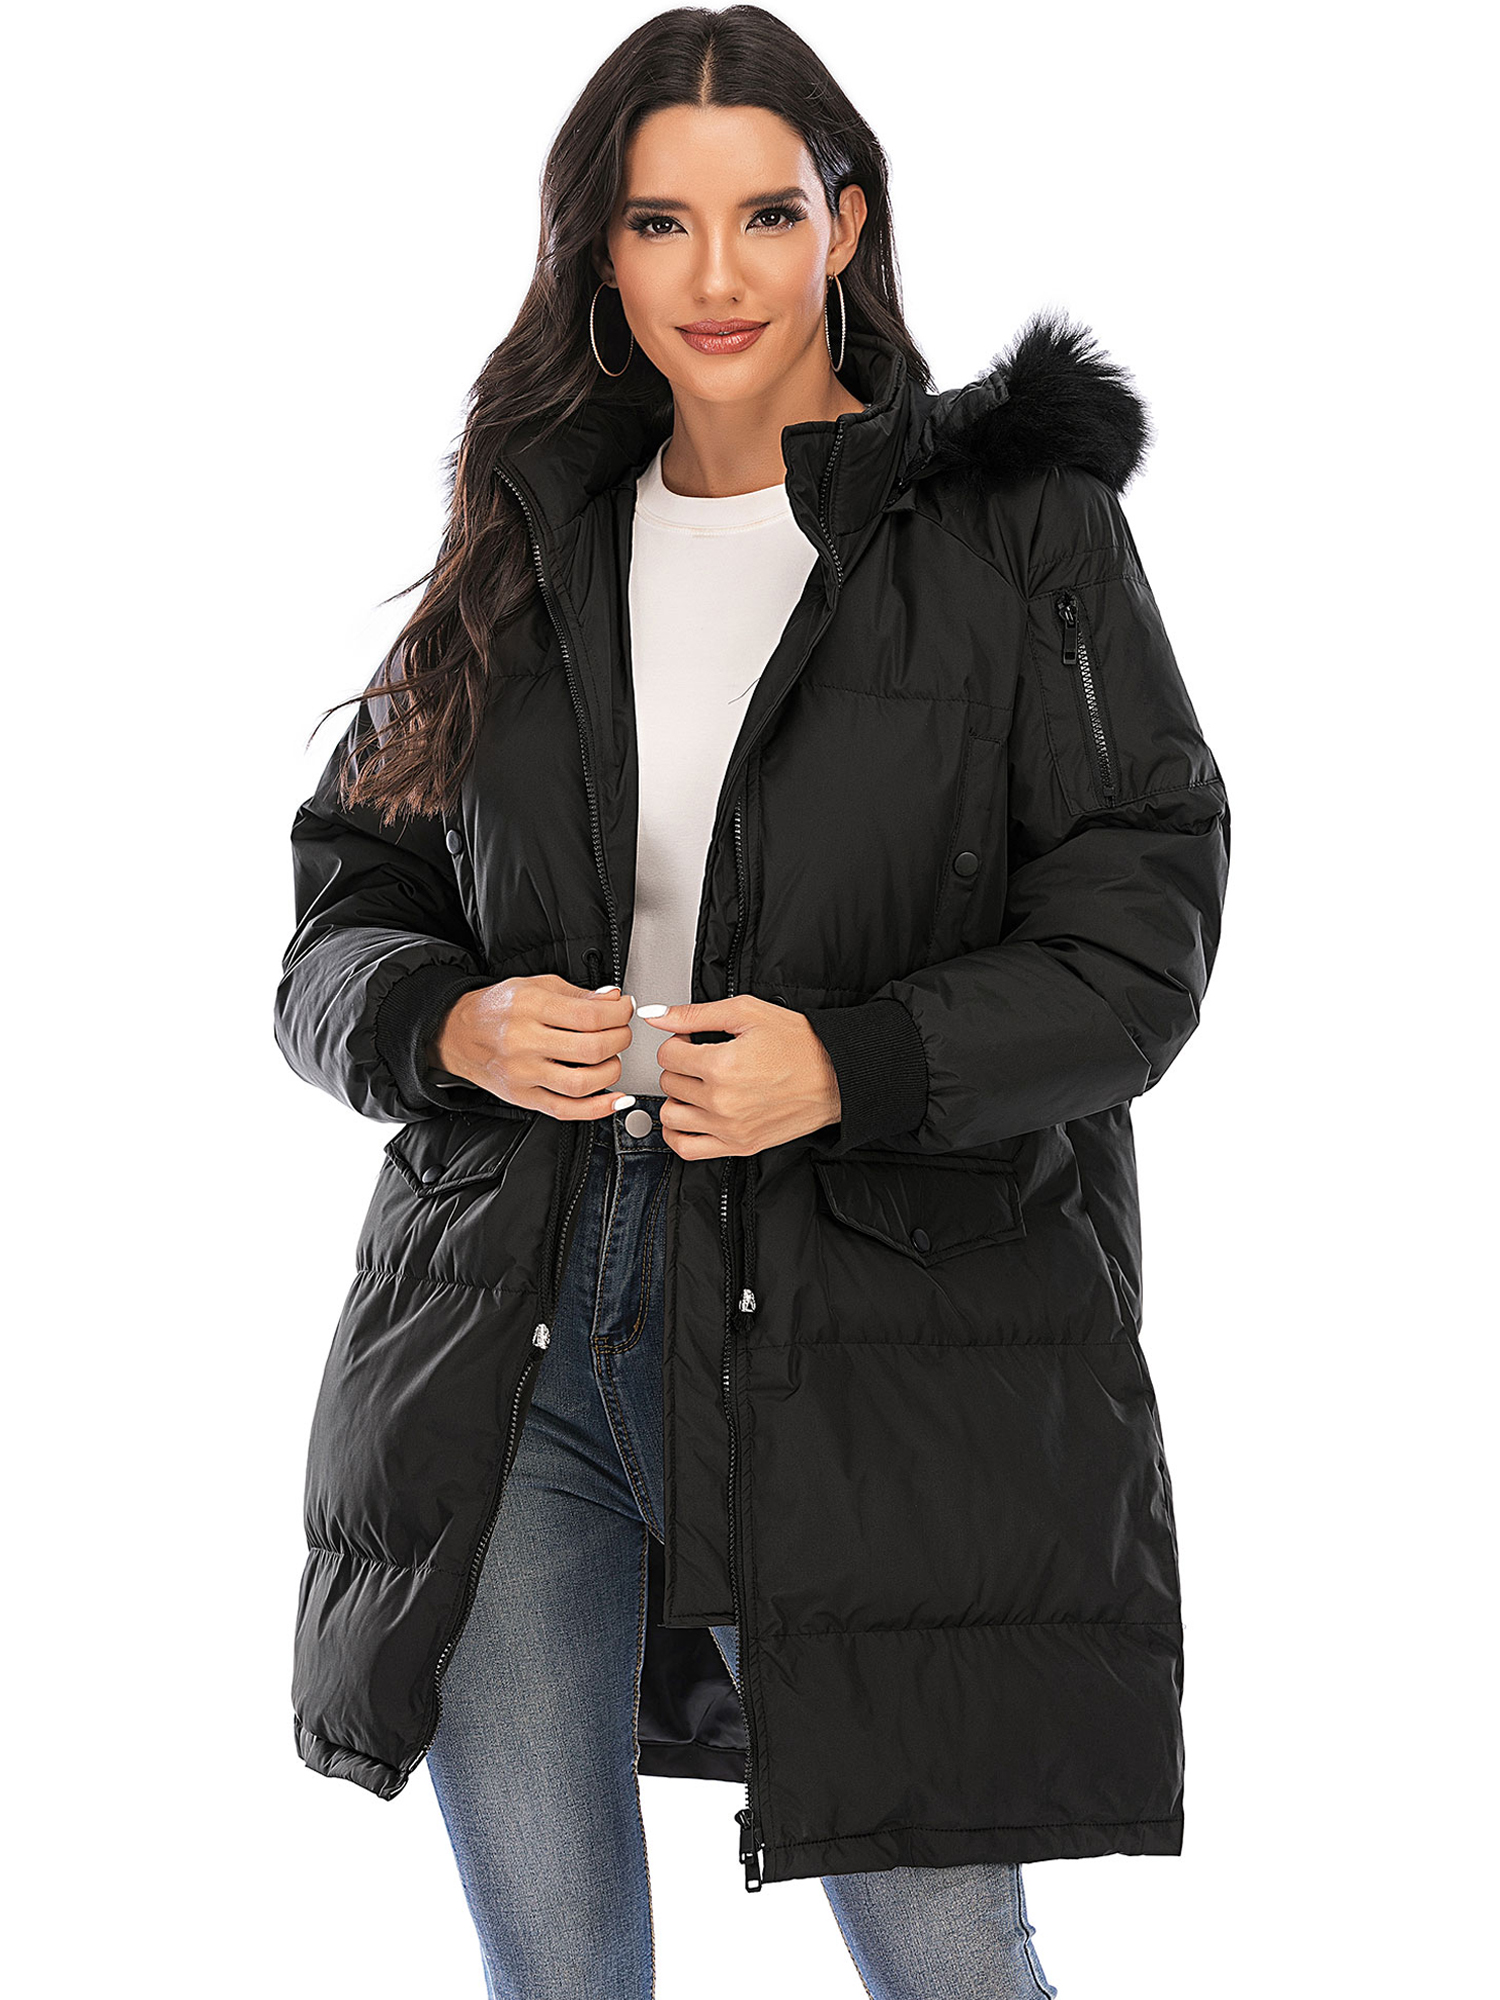 LELINTA Women Winter Plus Size Long Hoodie Coat Warm Jacket Zipper Parka Overcoats Raincoat Active Outdoor Trench Coat - image 3 of 7